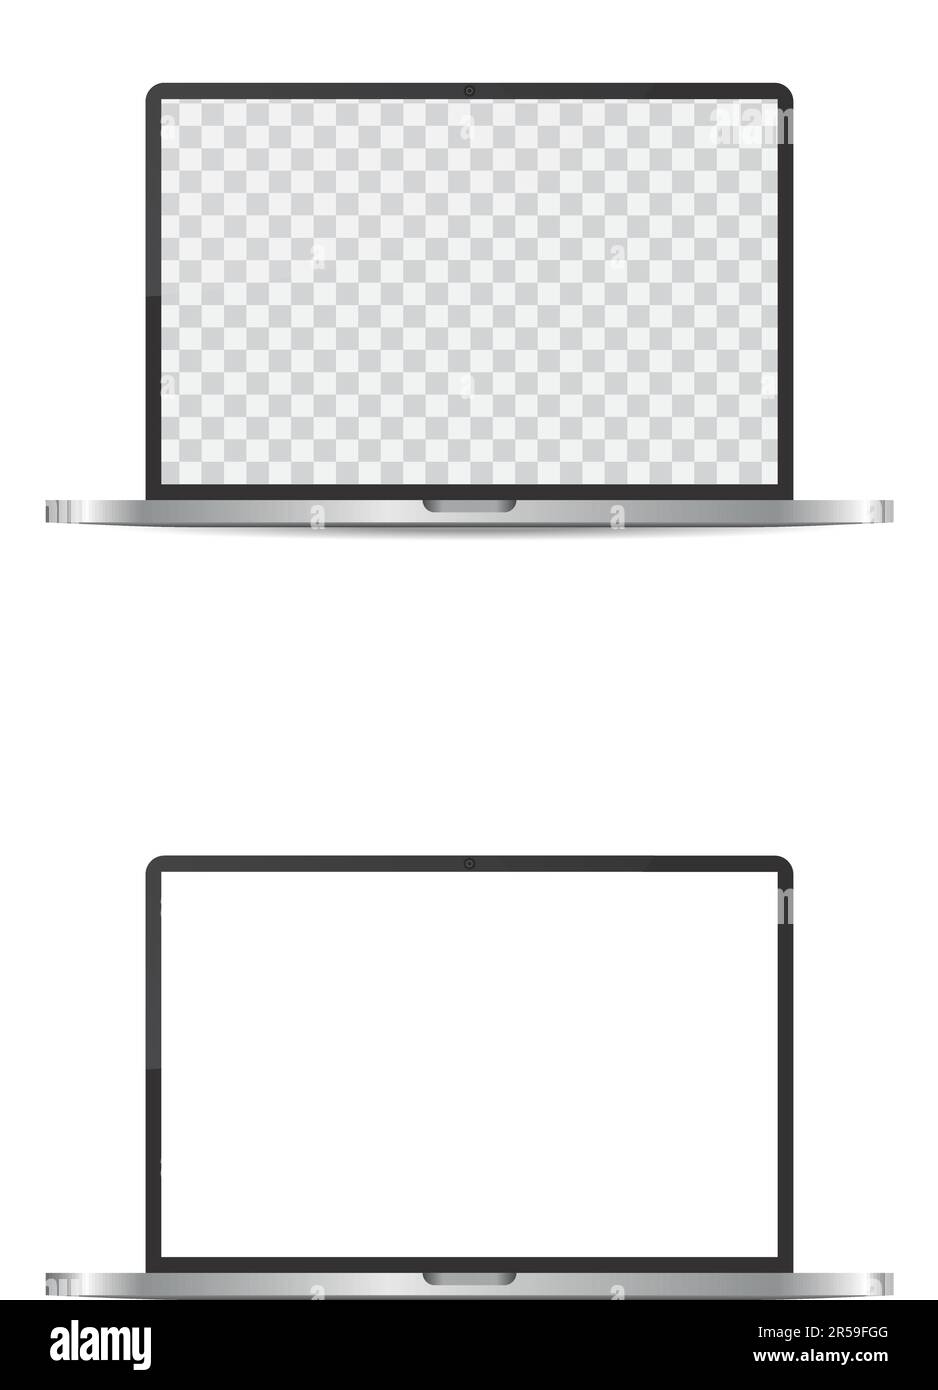 Maquette d'ordinateur portable ou portable grise réaliste. Appareil de bureau moderne. 3D objet vectoriel avec ombre portée Illustration de Vecteur